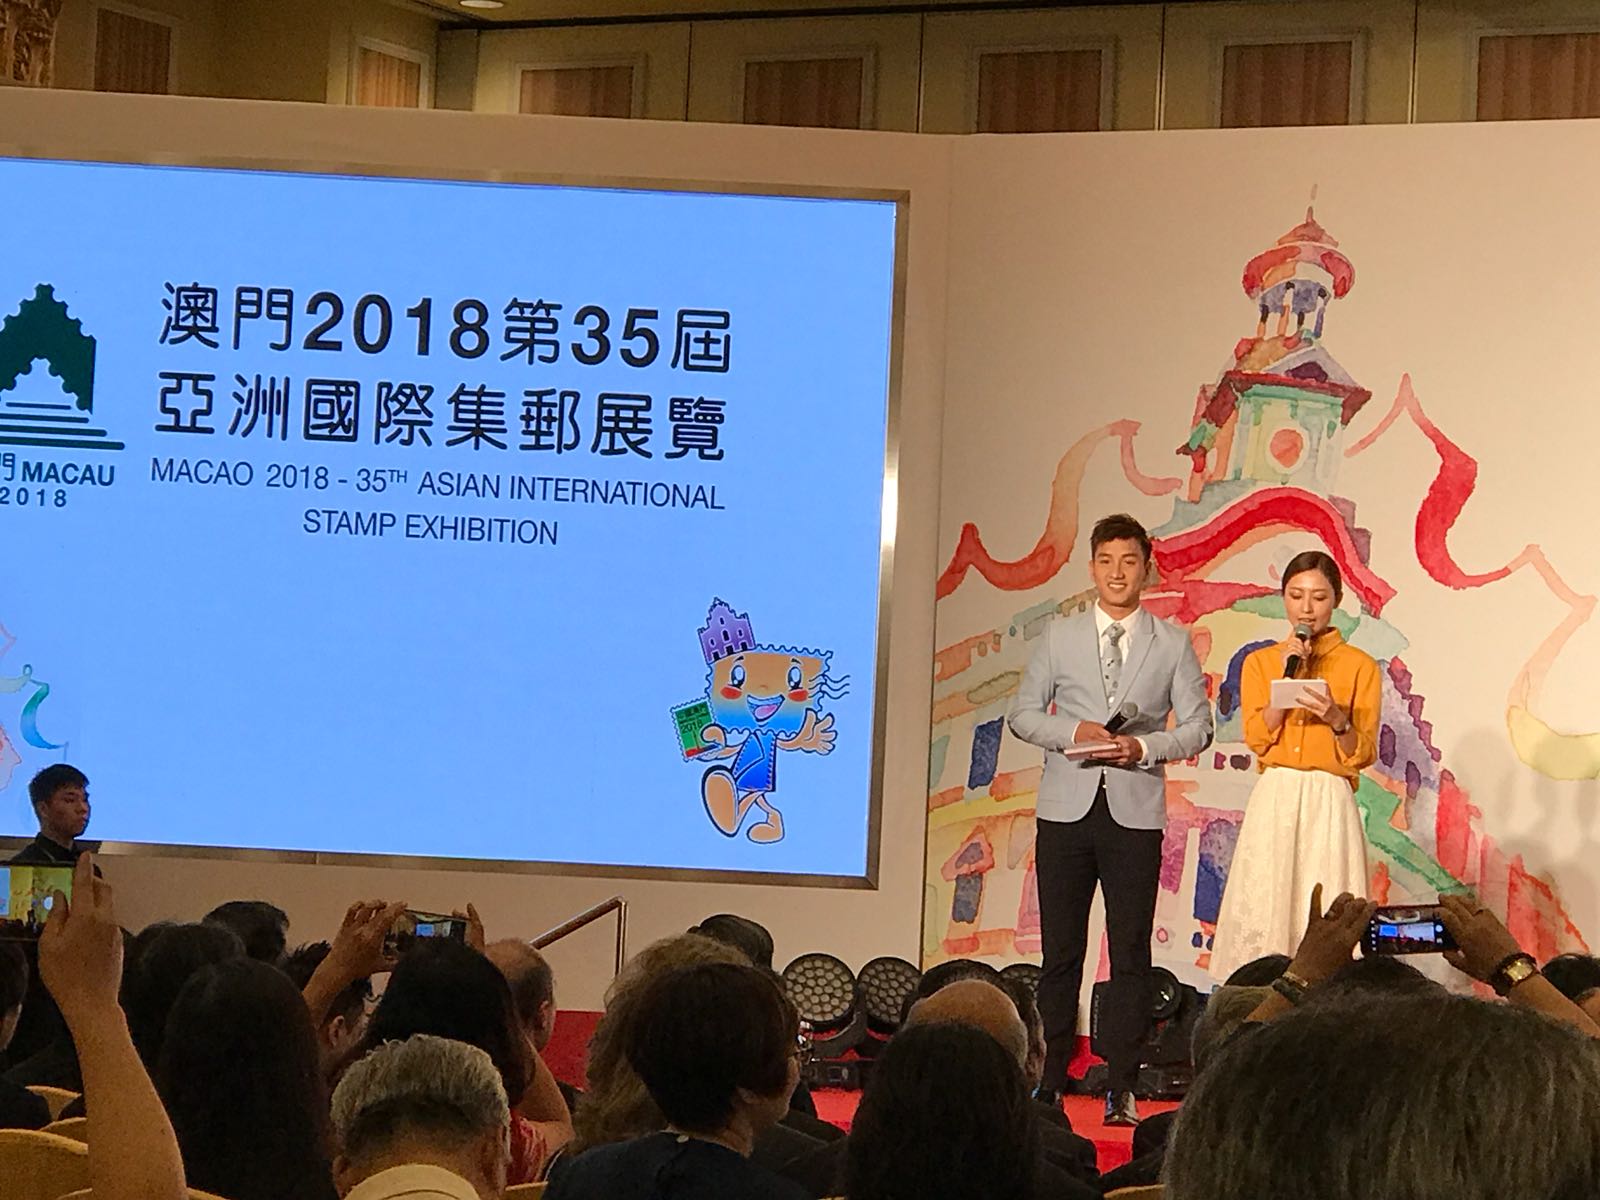 周啓陽 Elvis Chao司儀工作紀錄: (英)「澳門2018第35屆亞洲國際集郵展覽」開幕禮